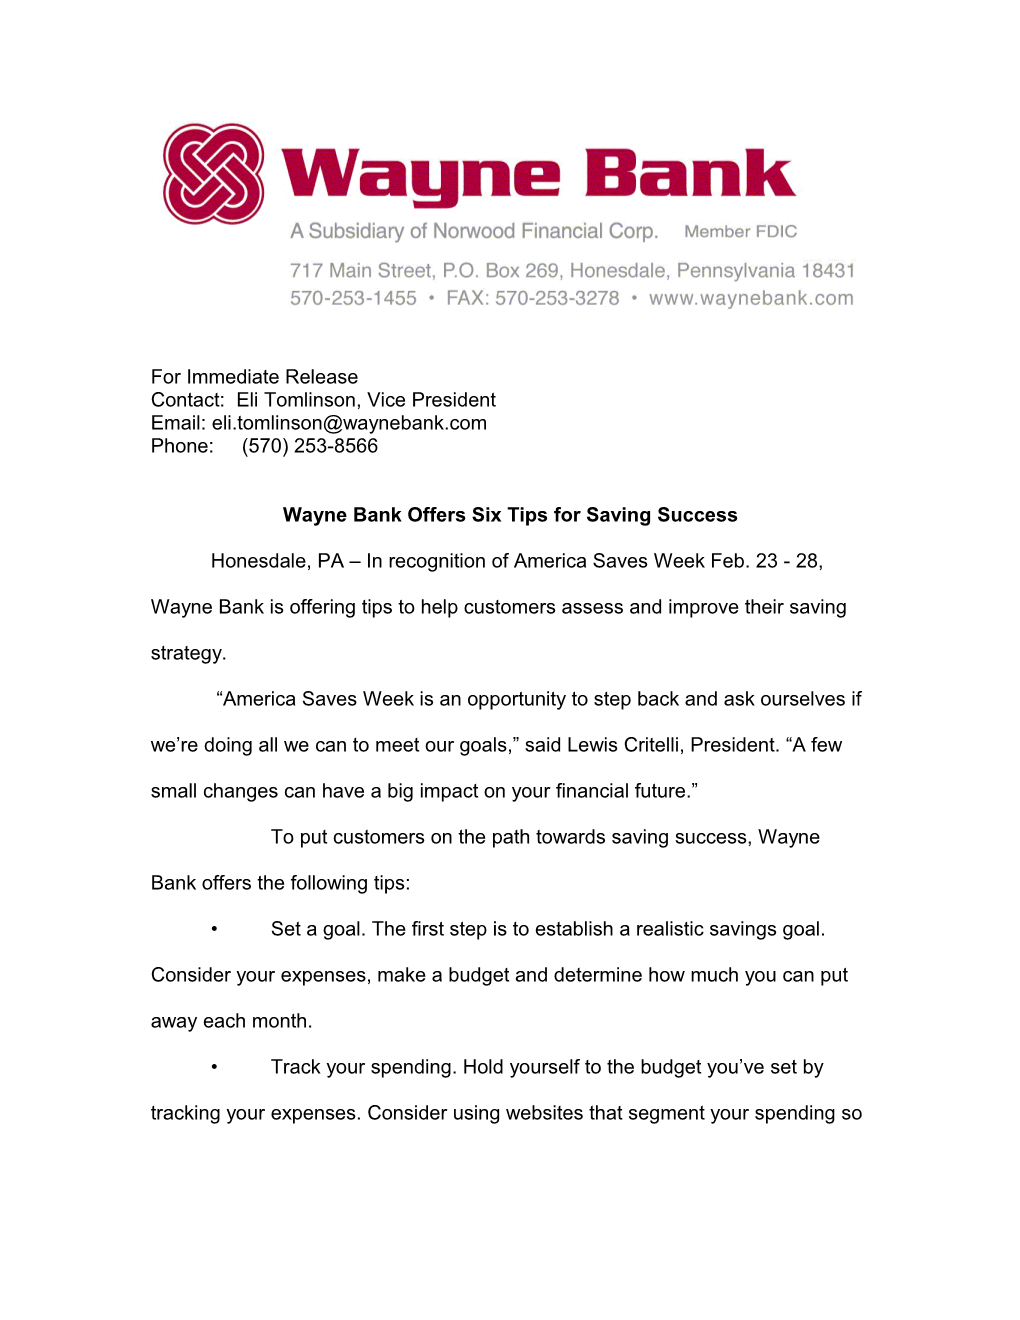 Wayne Bank Offers Six Tips for Saving Success